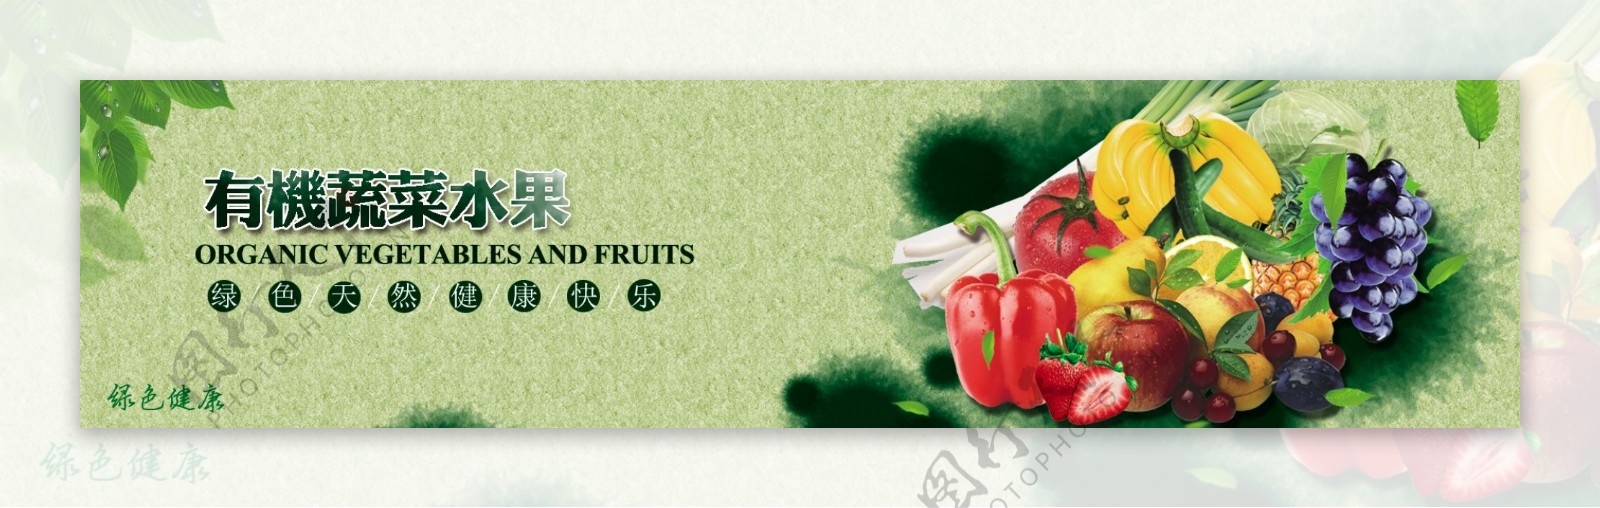 水果蔬菜广告设计网站首图设图片